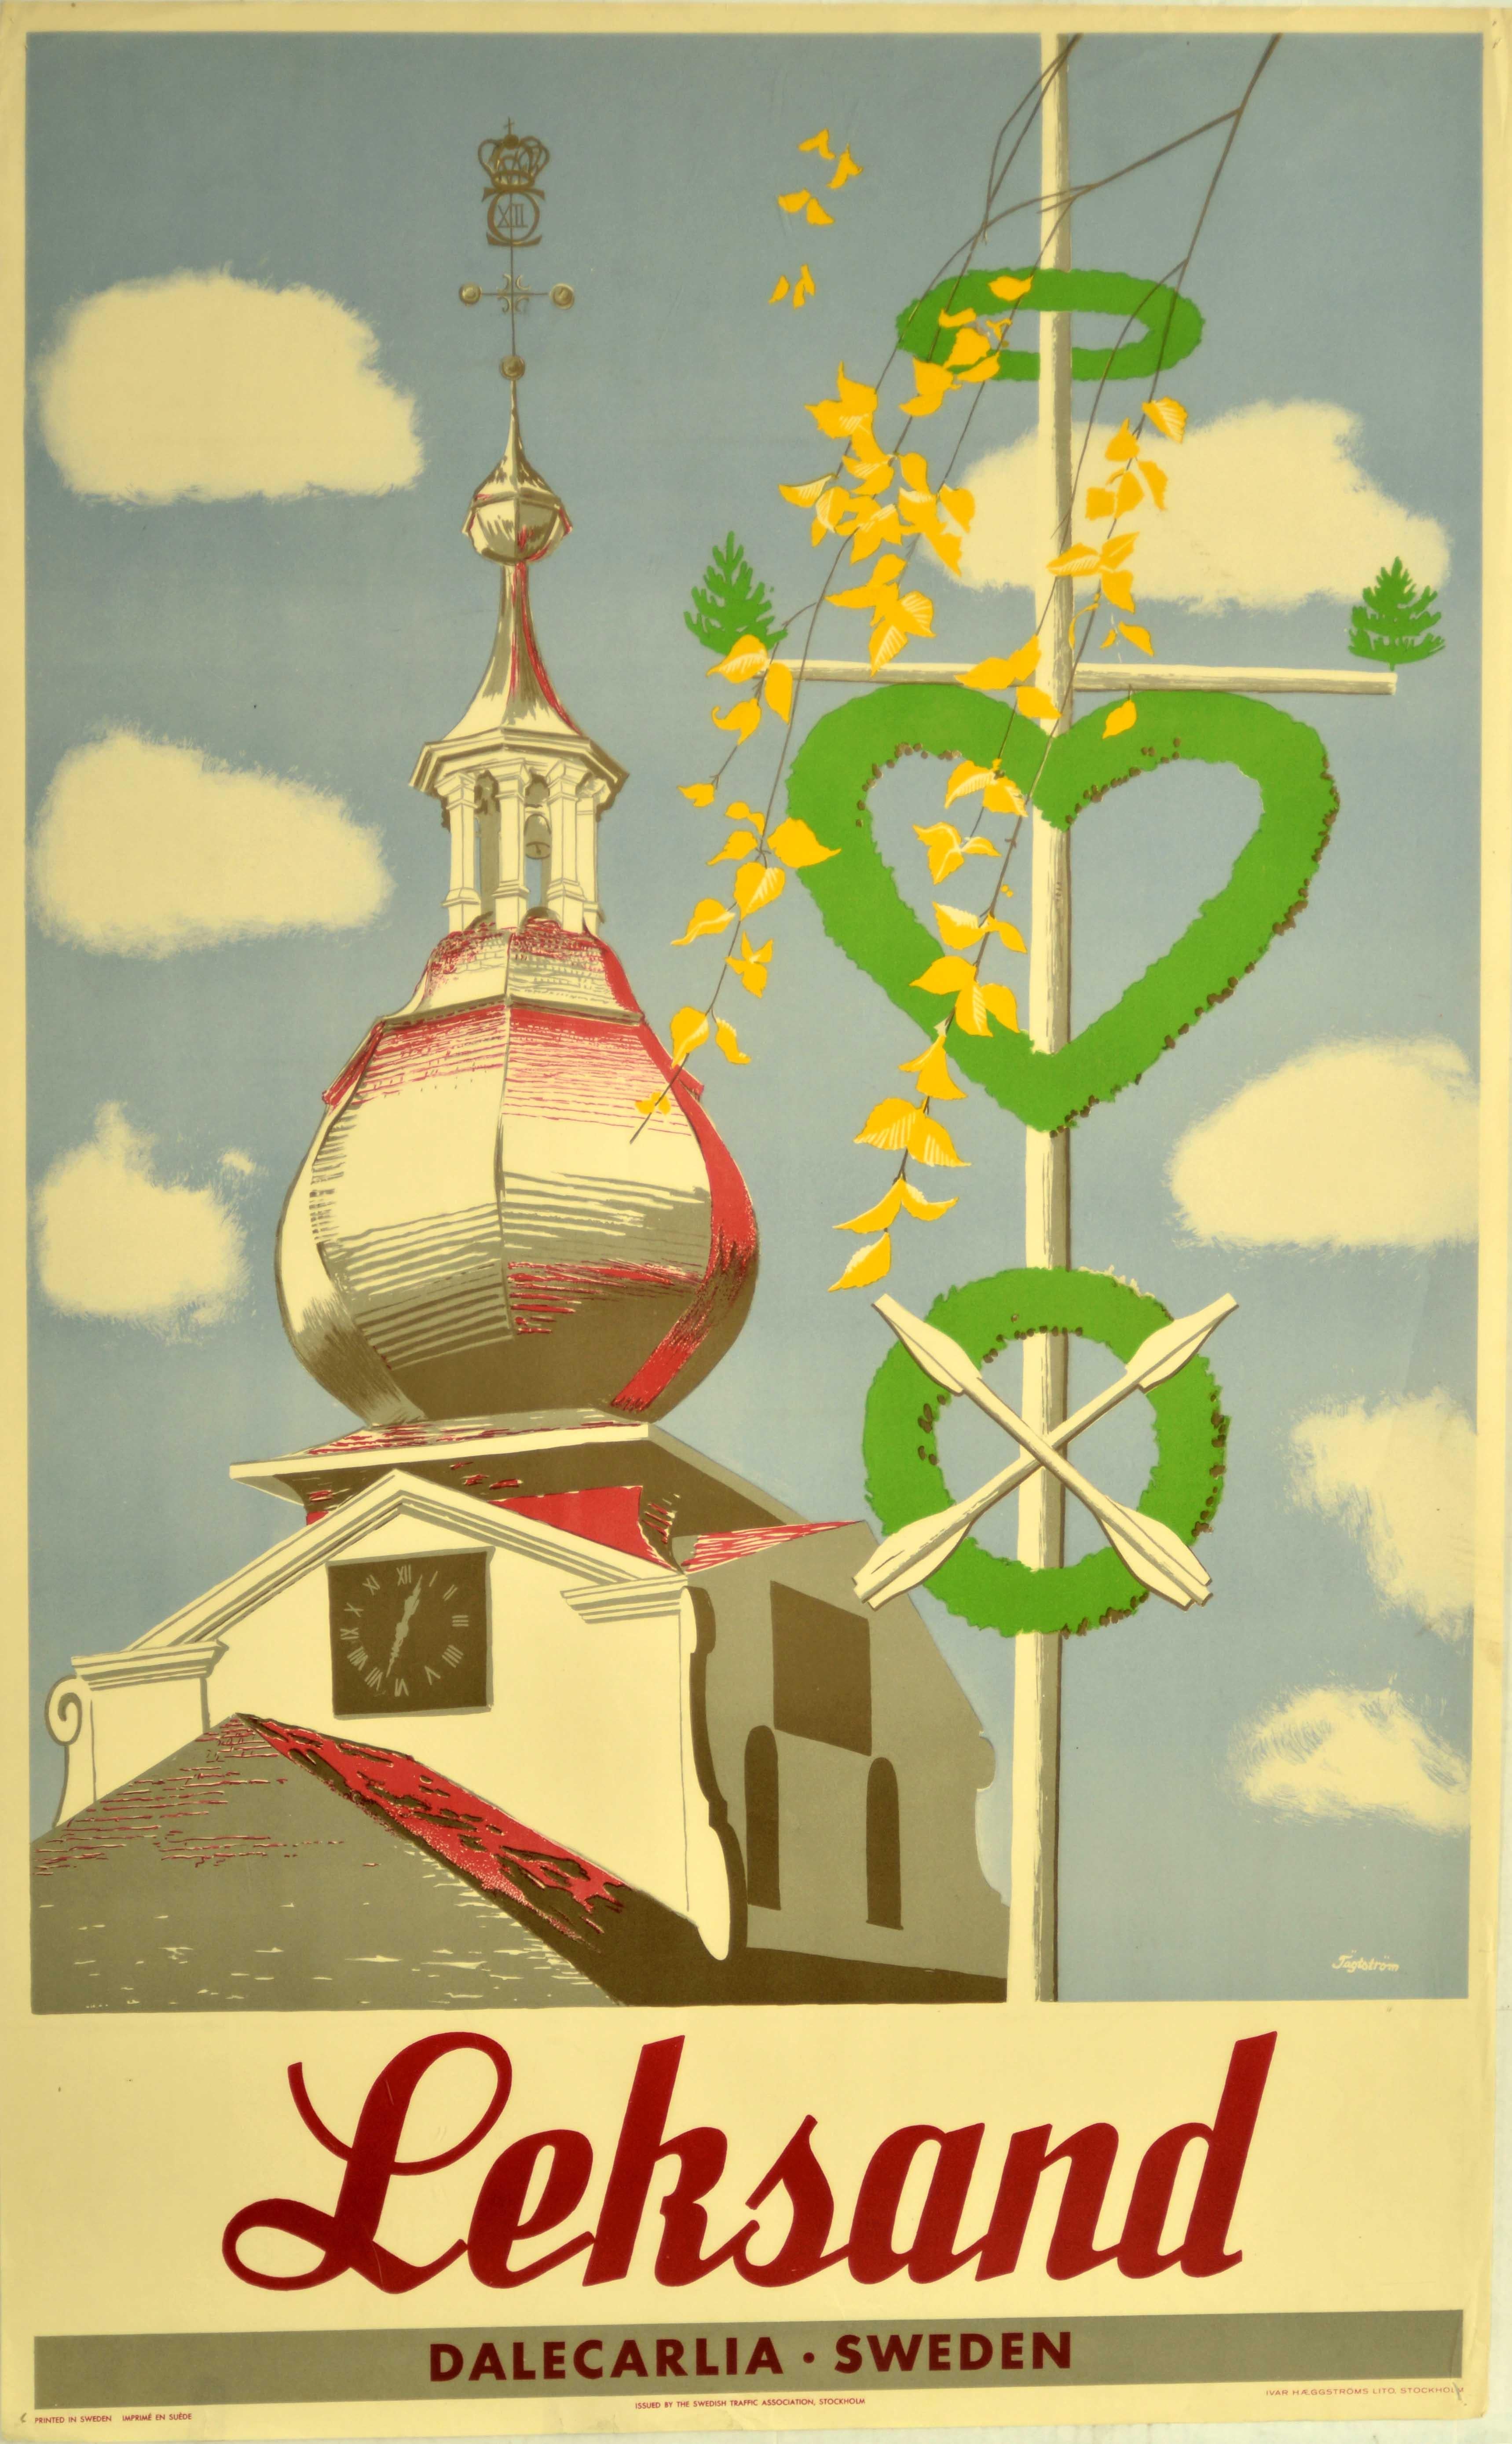 Jagtstsrom Print - Original Vintage Poster Leksand Dalecarlia Sweden Travel Clock Dome Architecture